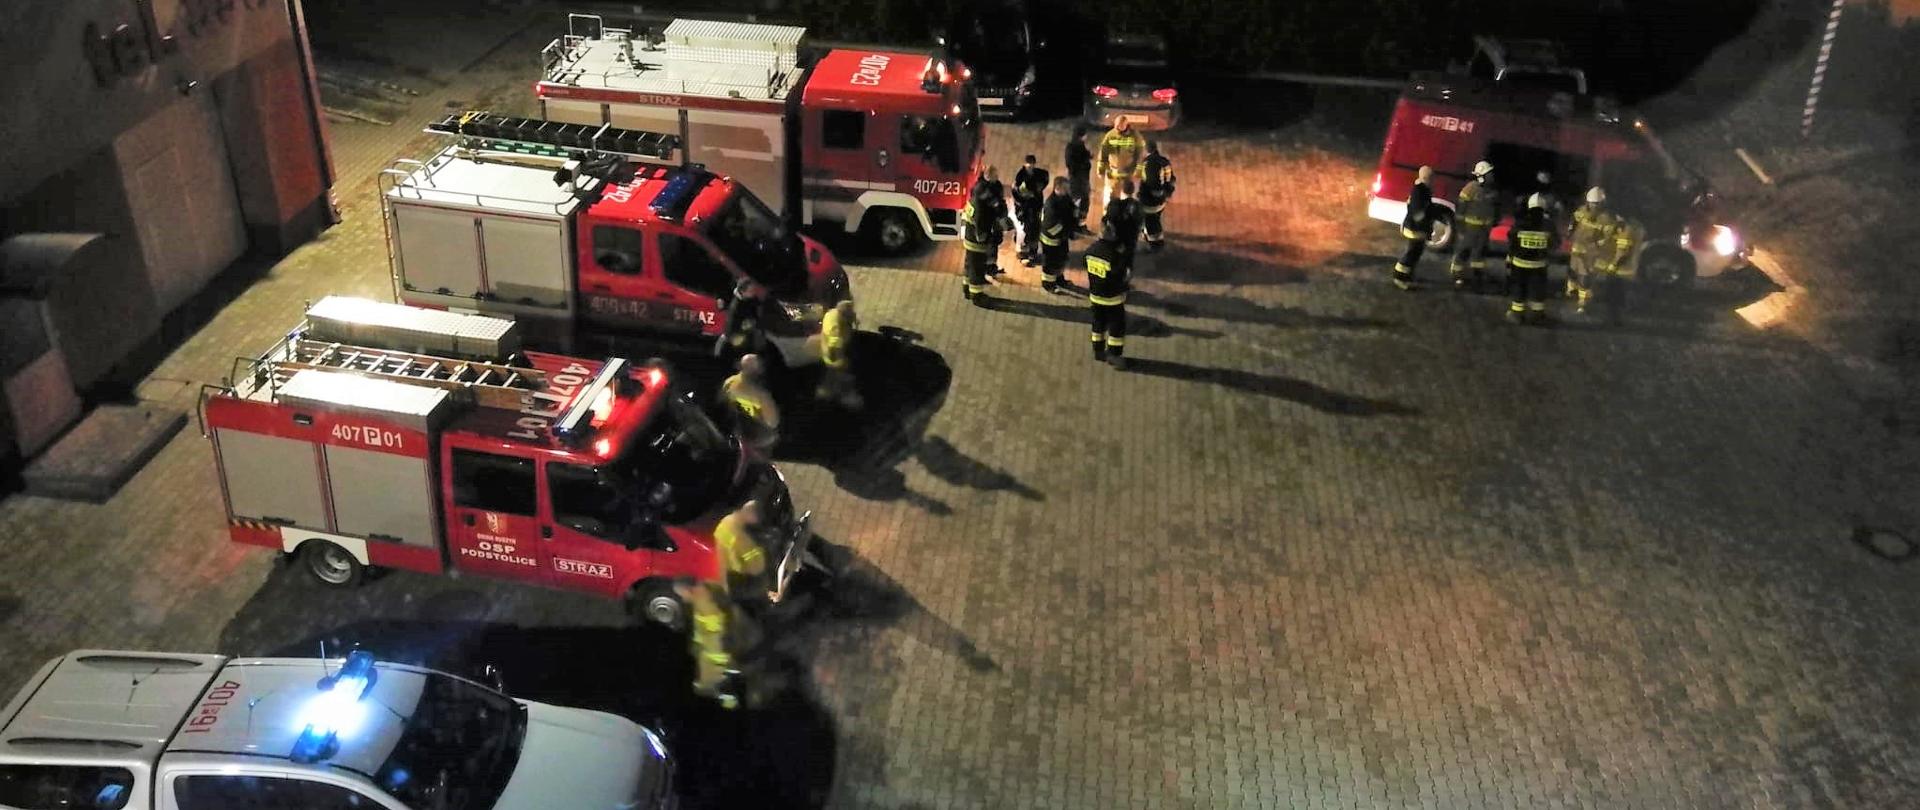 Zdjęcie przedstawia strażaków szykujących się do poszukiwań nocnych zaginionej osoby oraz samochody strażackie.
W tle plac Komendy oraz budynki.
